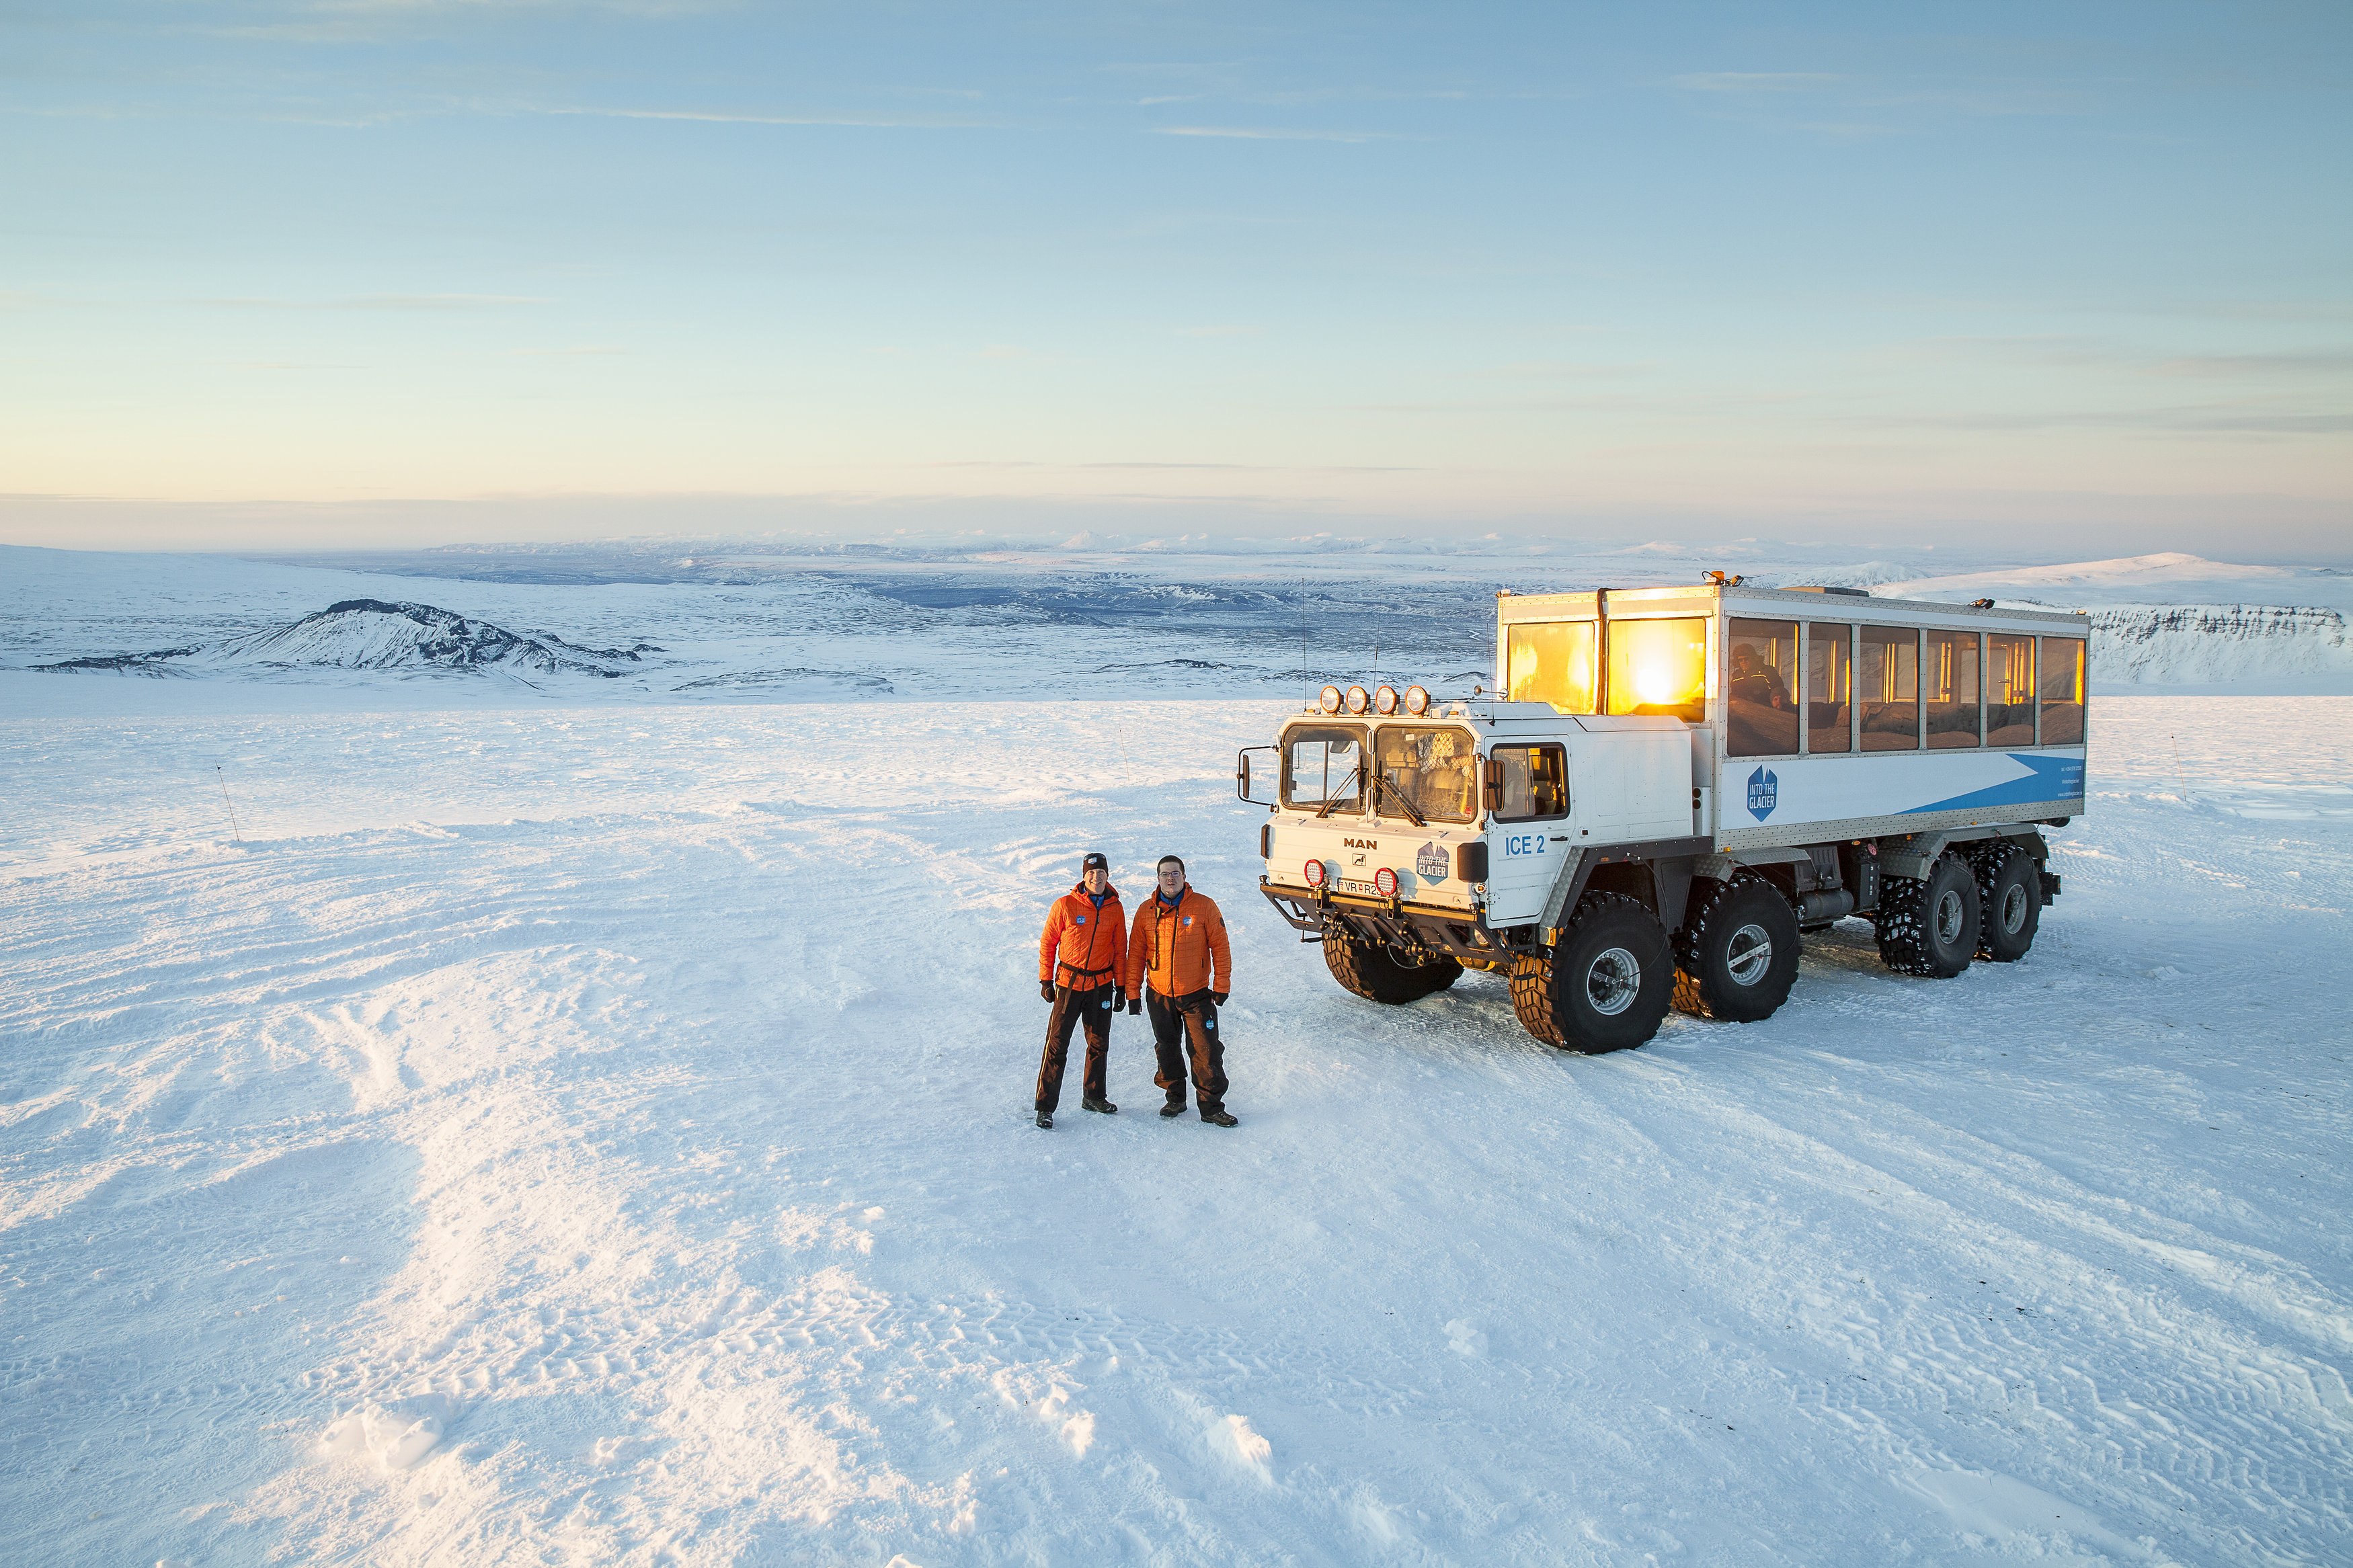 Afbeeldingsresultaat voor iceland Langjokull gletsjer truck